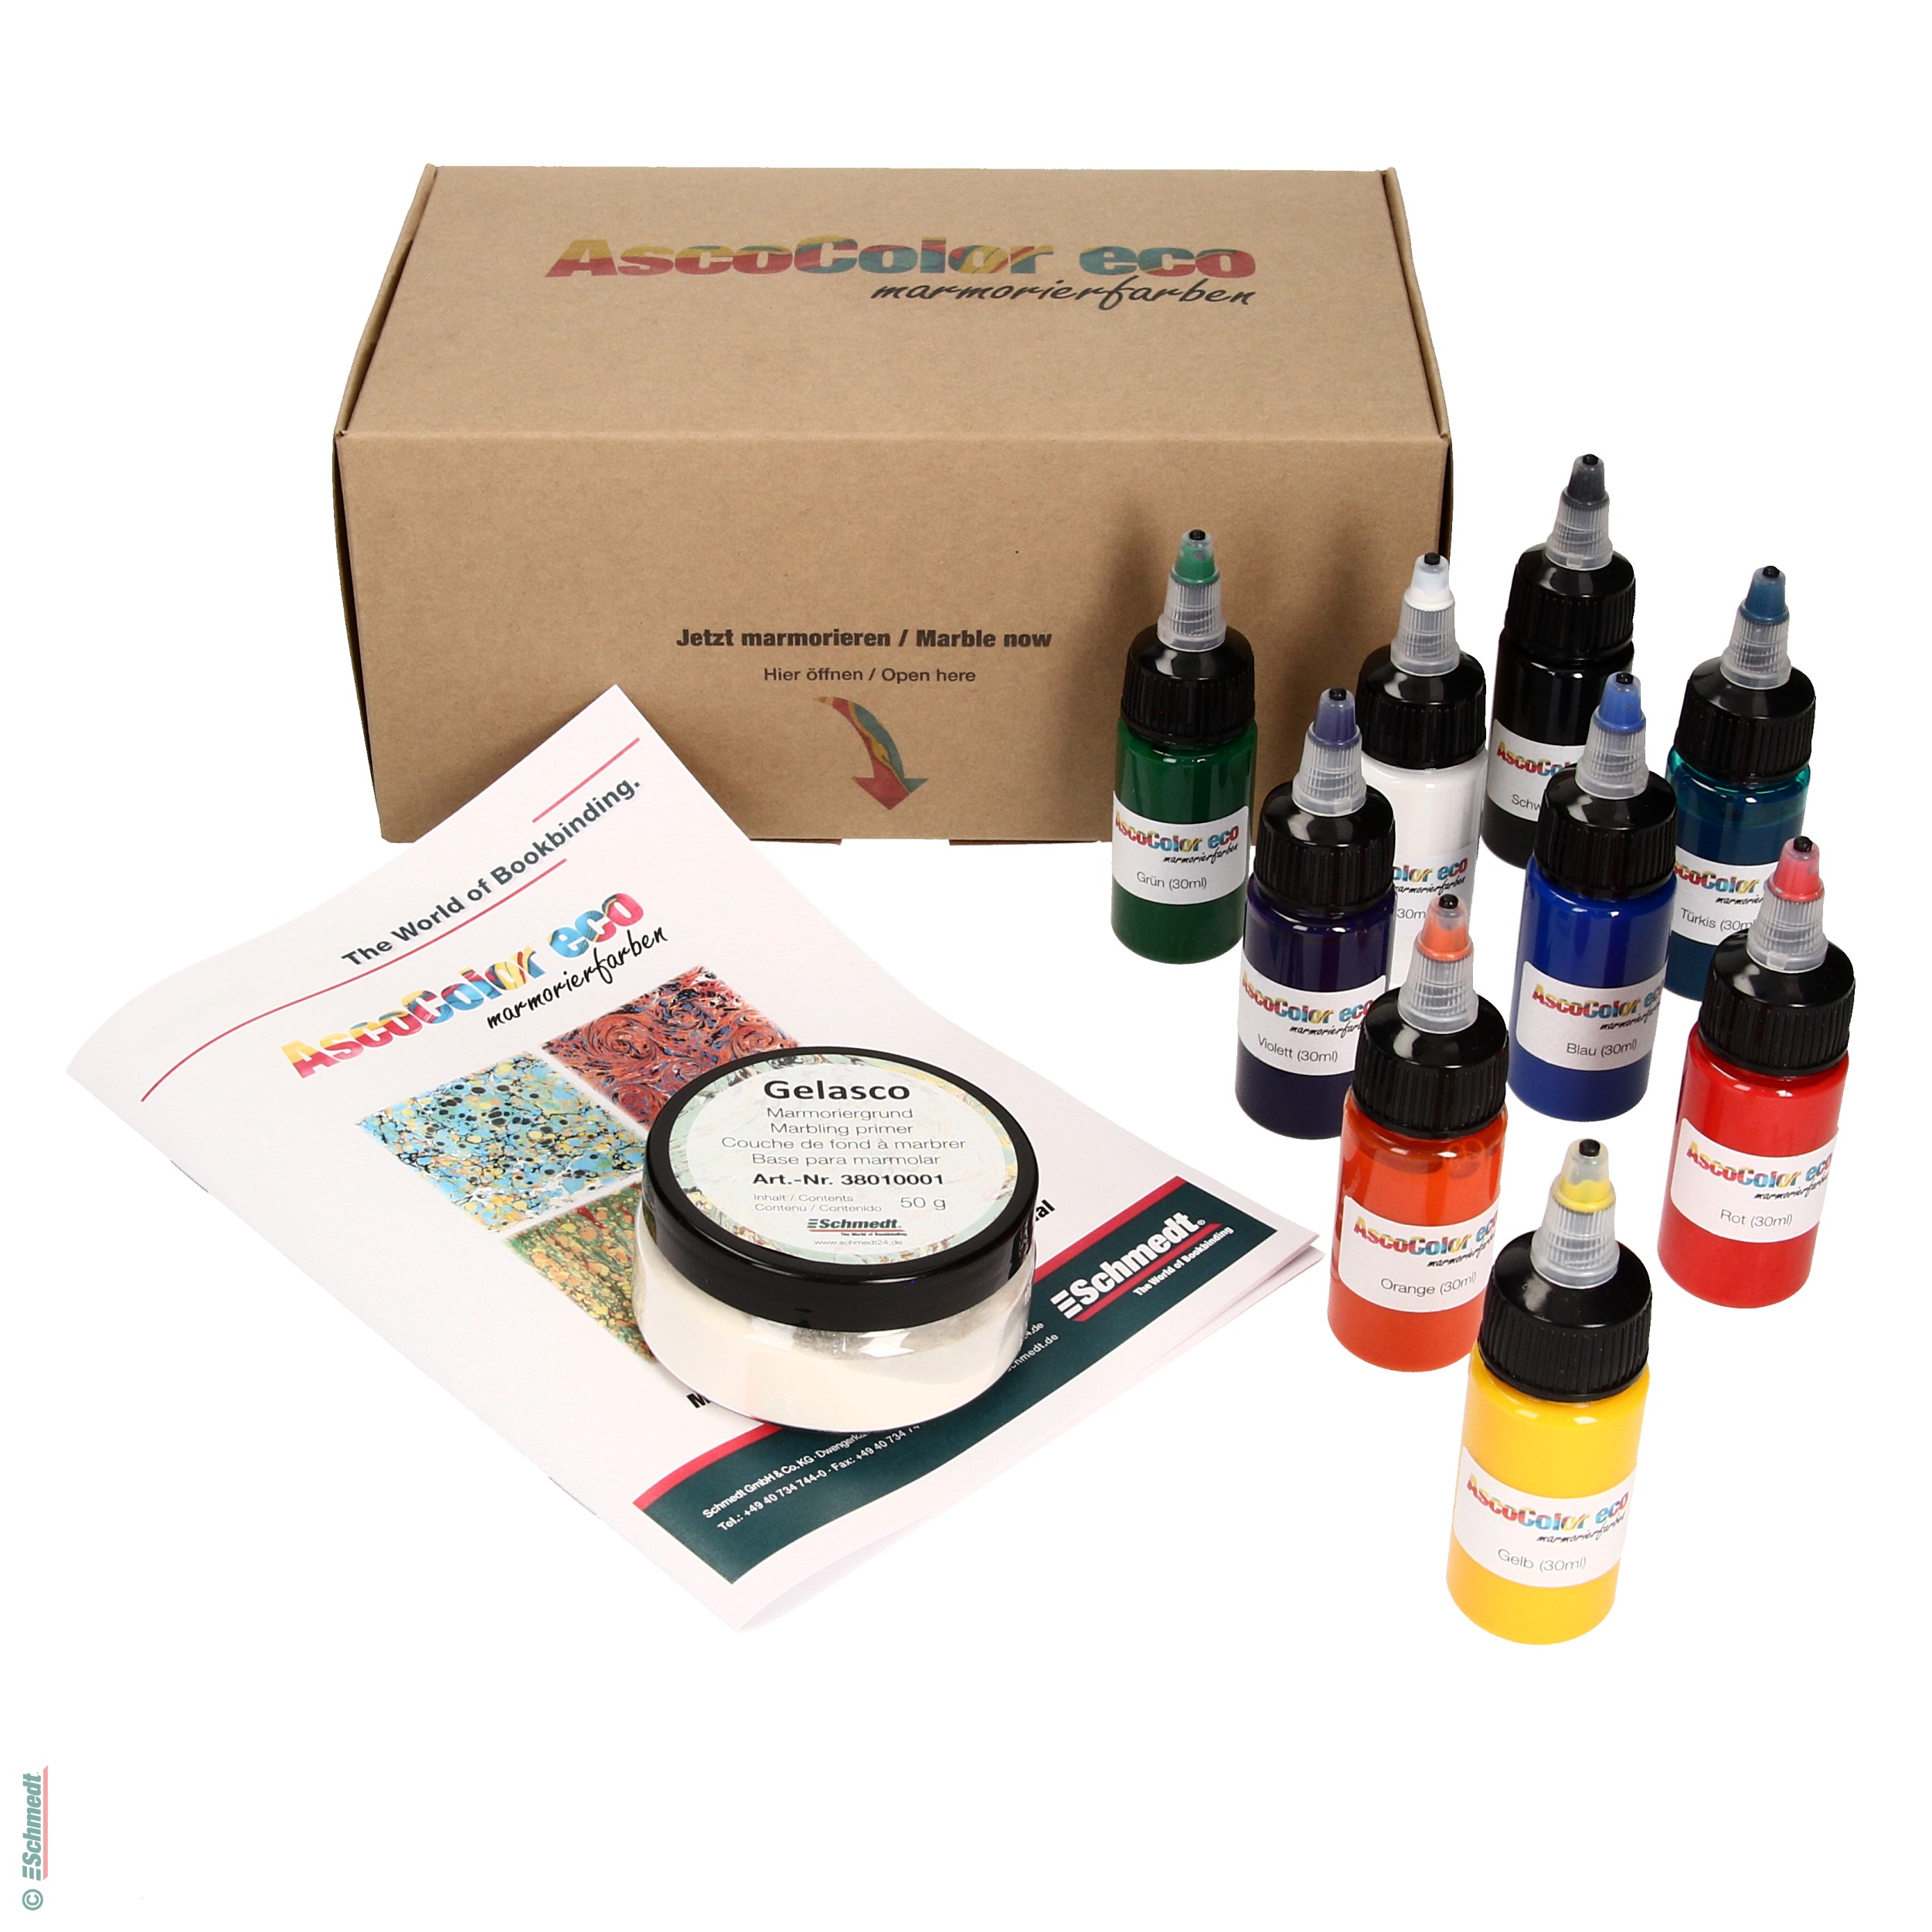 AscoColor eco - Marmorierfarben-Set - Acrylfarben auf Wasserbasis mit organischen Pigmenten - zur Herstellung marmorierter Papiere... - Bild-1